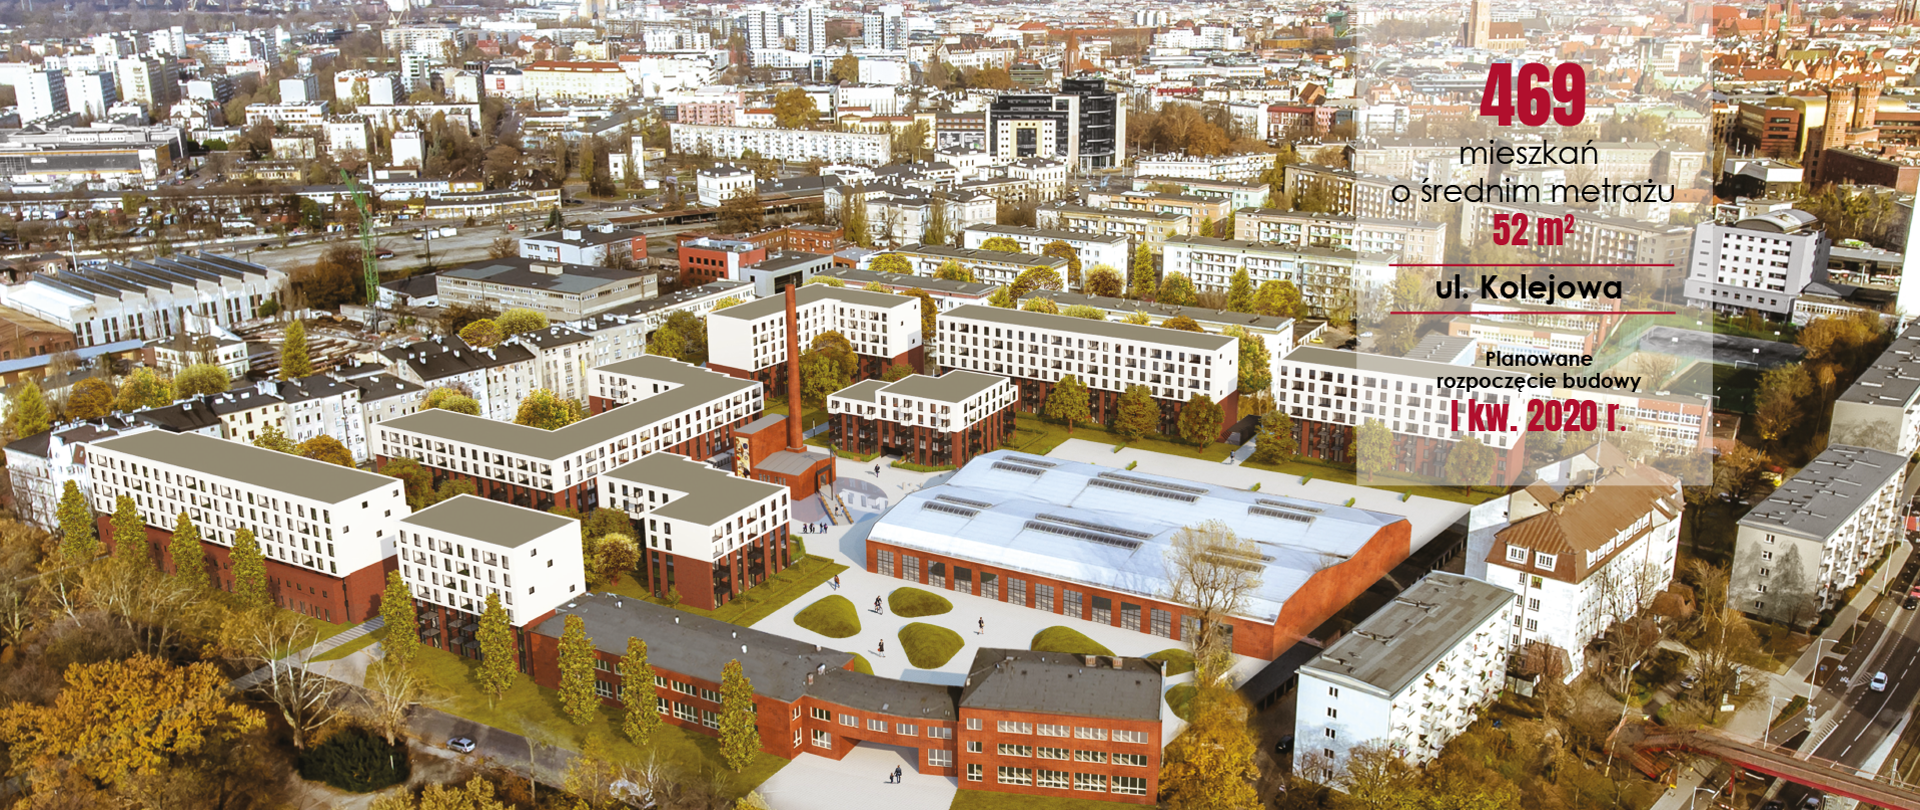 wizualizacja projektu i napis 469 mieszkań o średnim metrażu 52 mkw., ul. Kolejowa, planowane rozpoczęcie budowy I kw. 202 r.